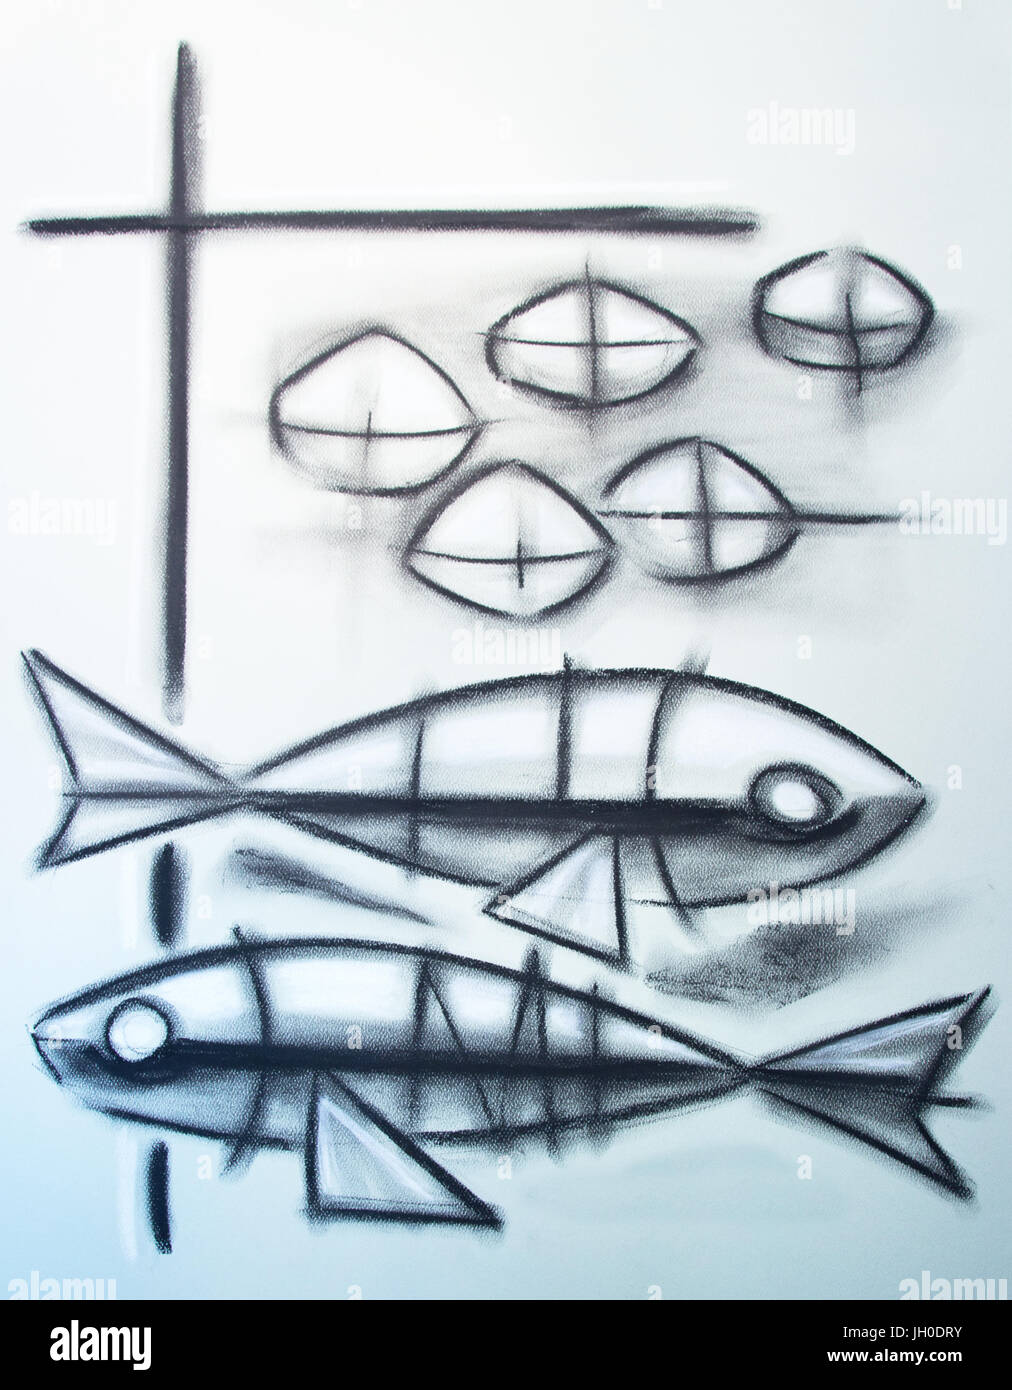 Disegnata a mano illustrazione disegno a carboncino o del simbolo cristiano di cinque pani e due pesci Foto Stock